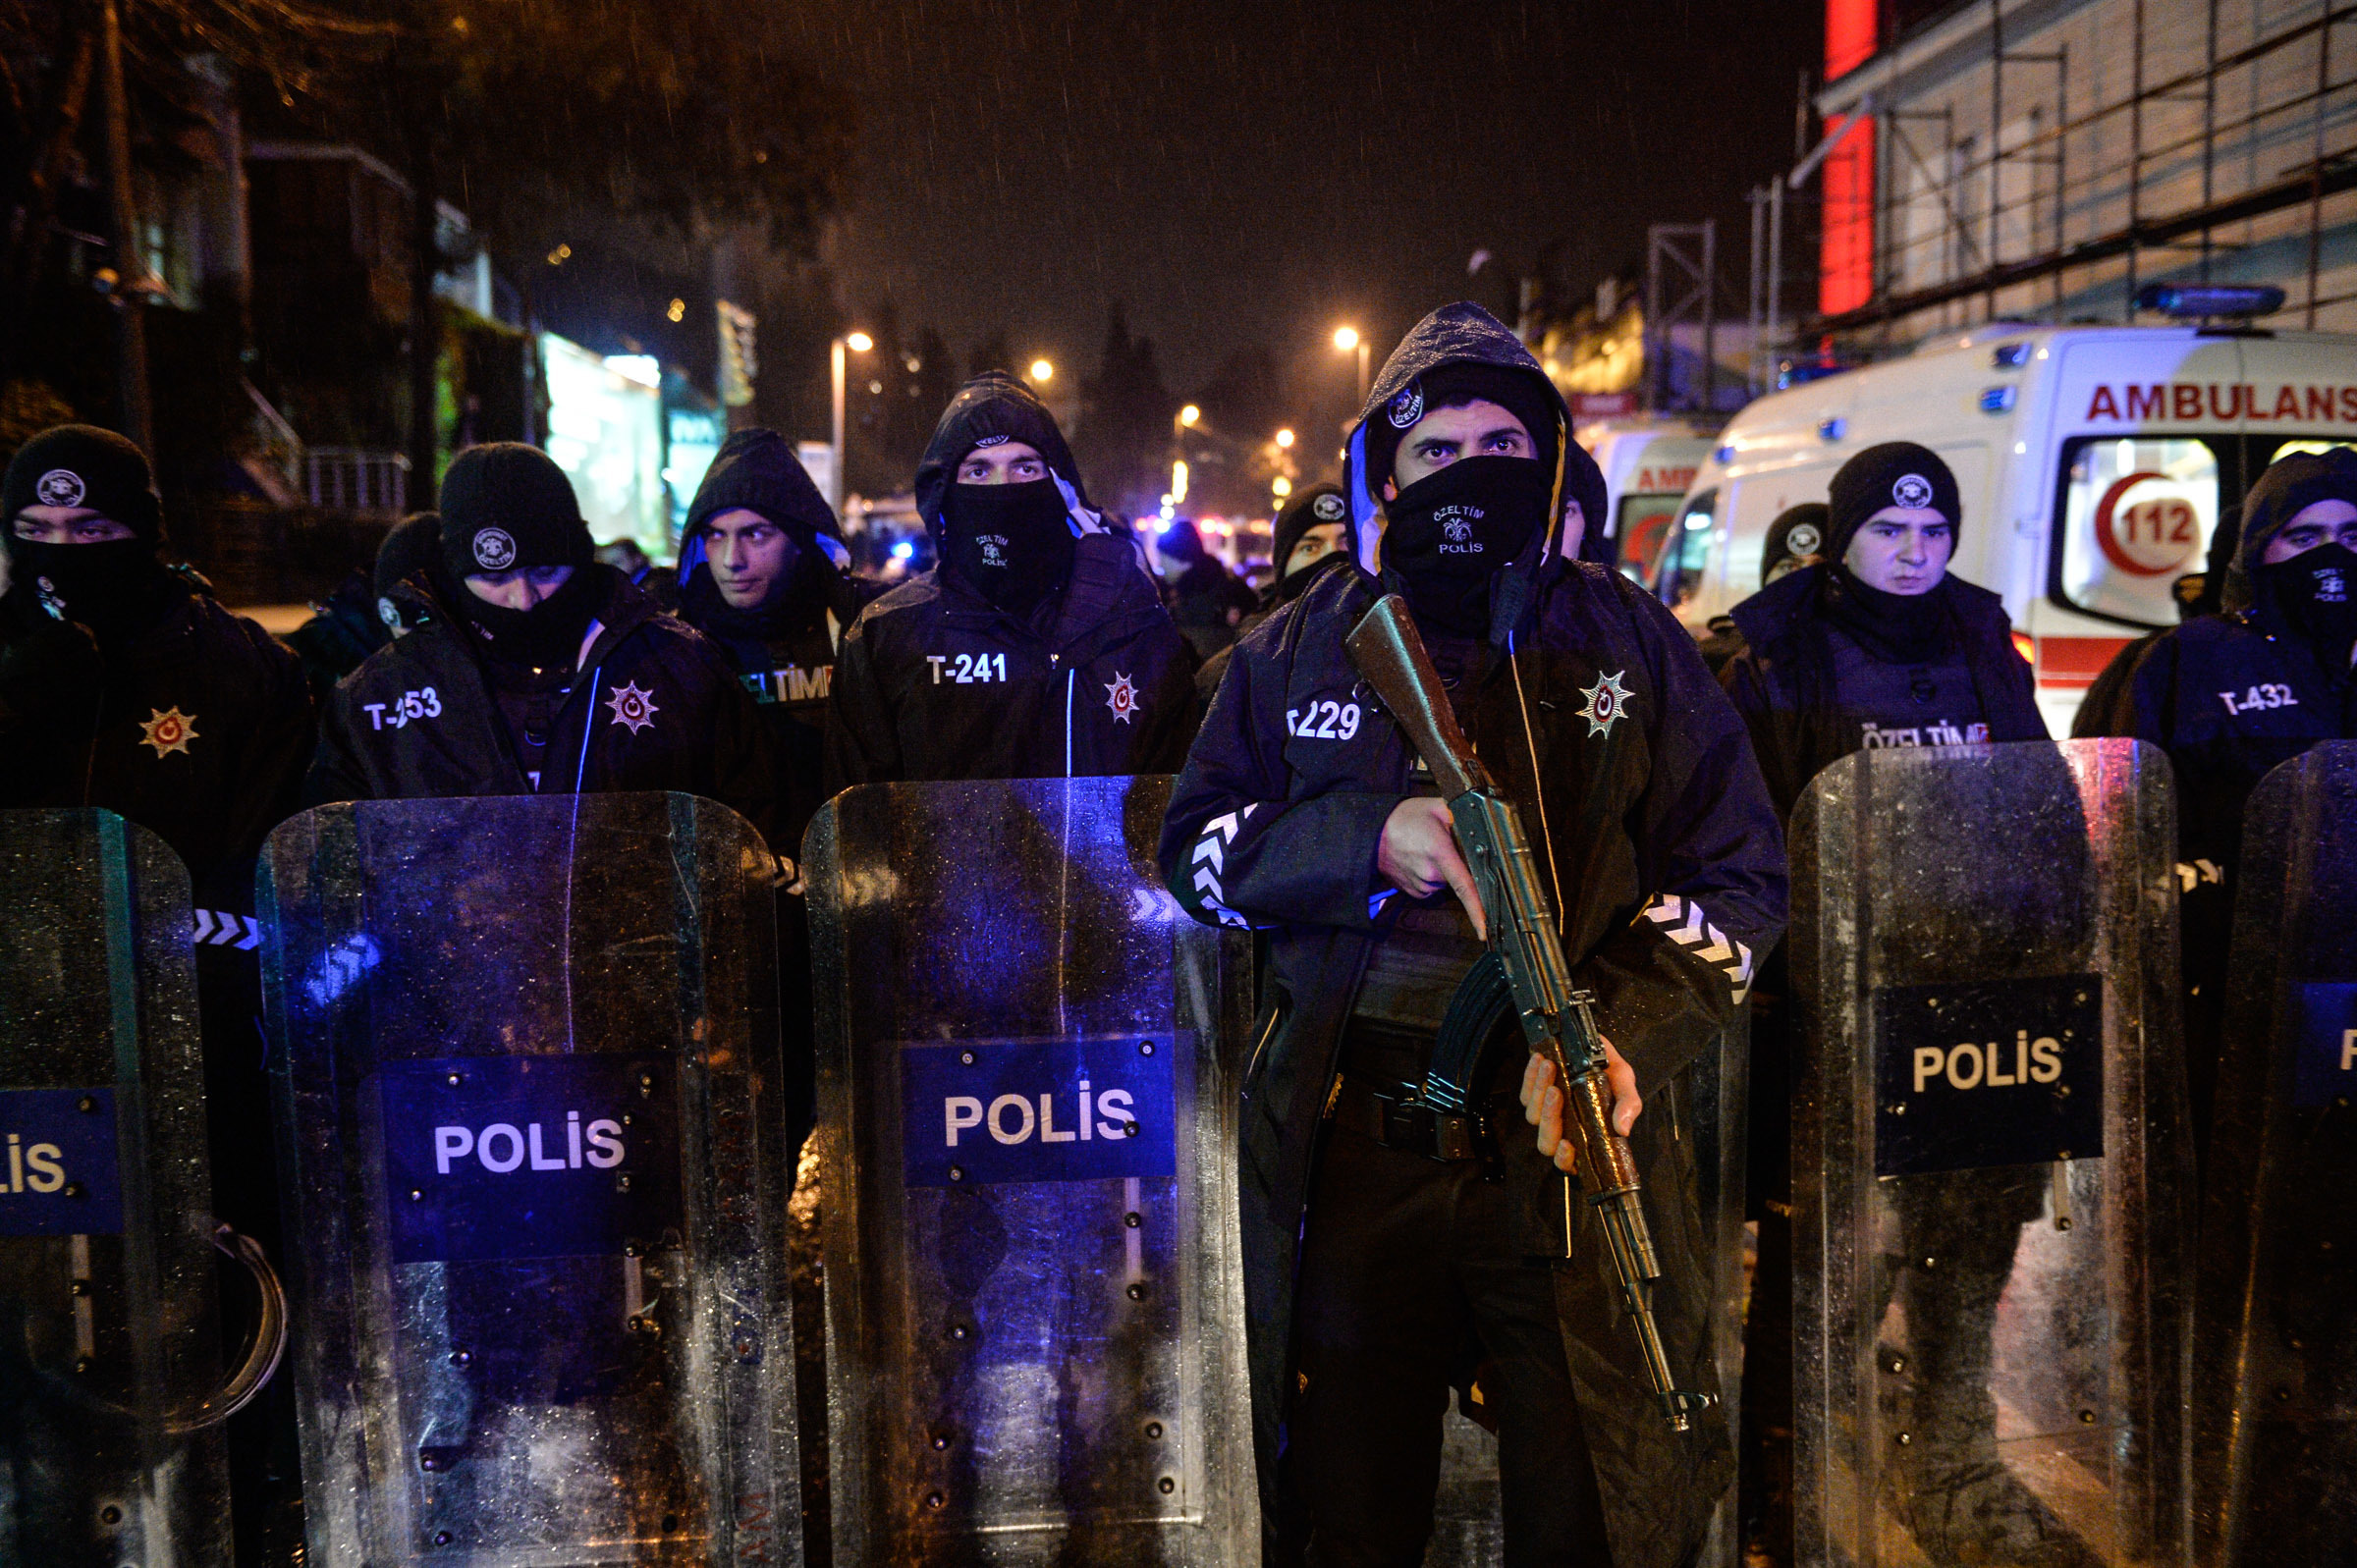 Нападение в стамбуле. Теракт в ночном клубе в Стамбуле. Нападение на ночной клуб в Стамбуле.